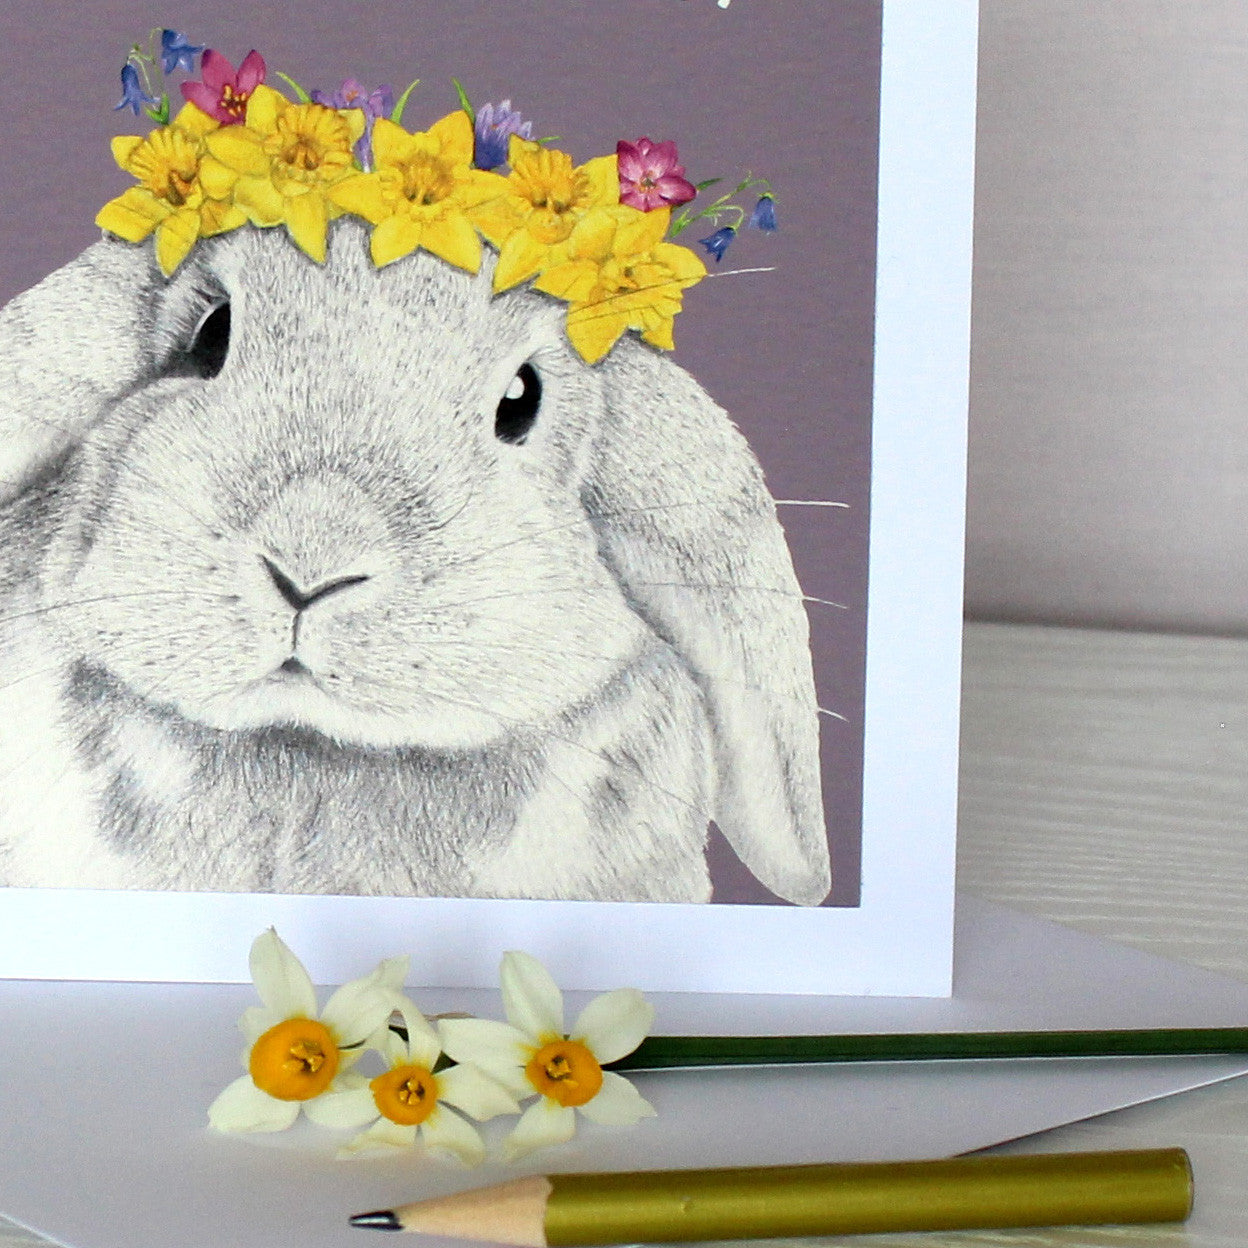 Spring Bunny Birthday Age Card